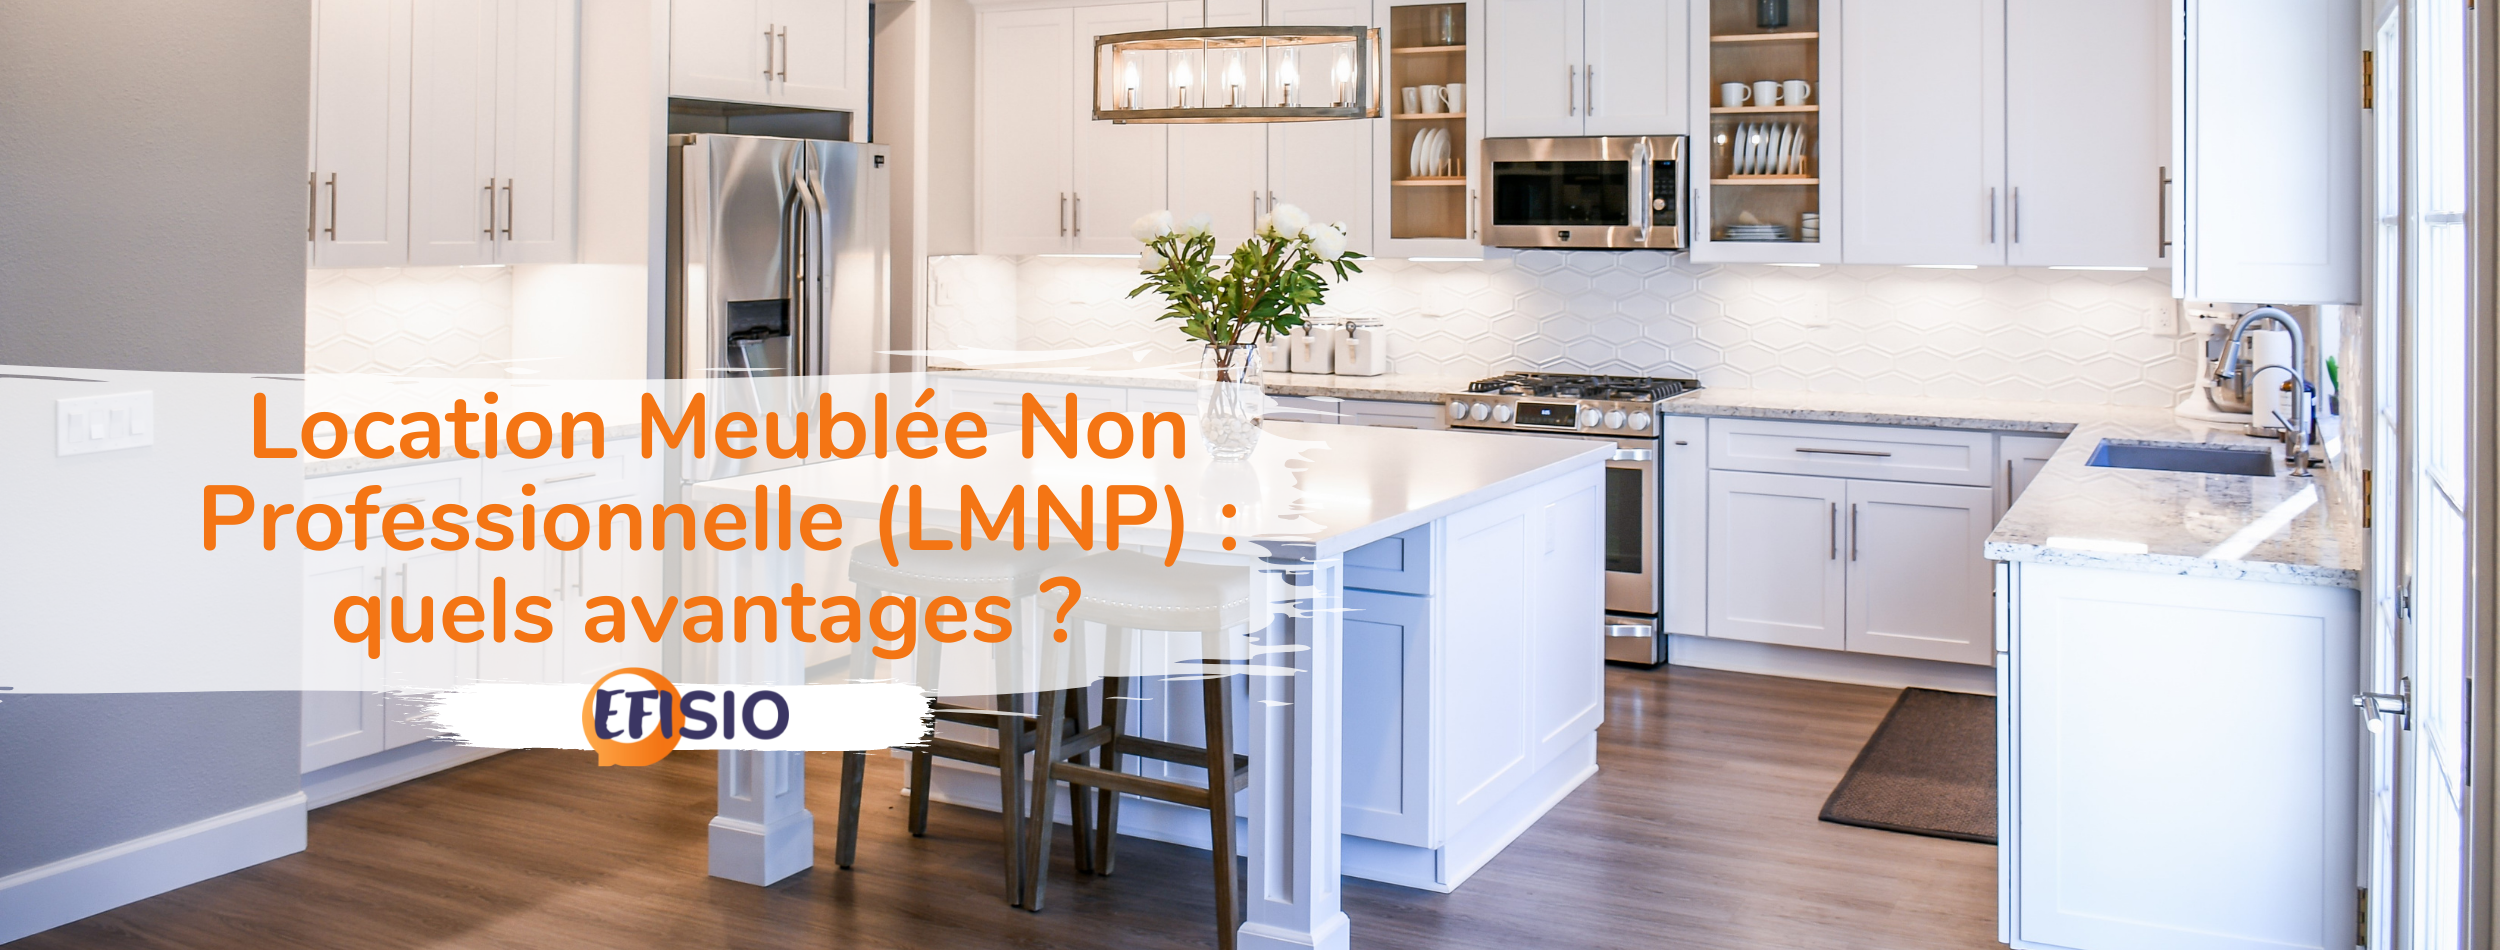 Location Meublée Non Professionnelle (LMNP) : quels avantages ?